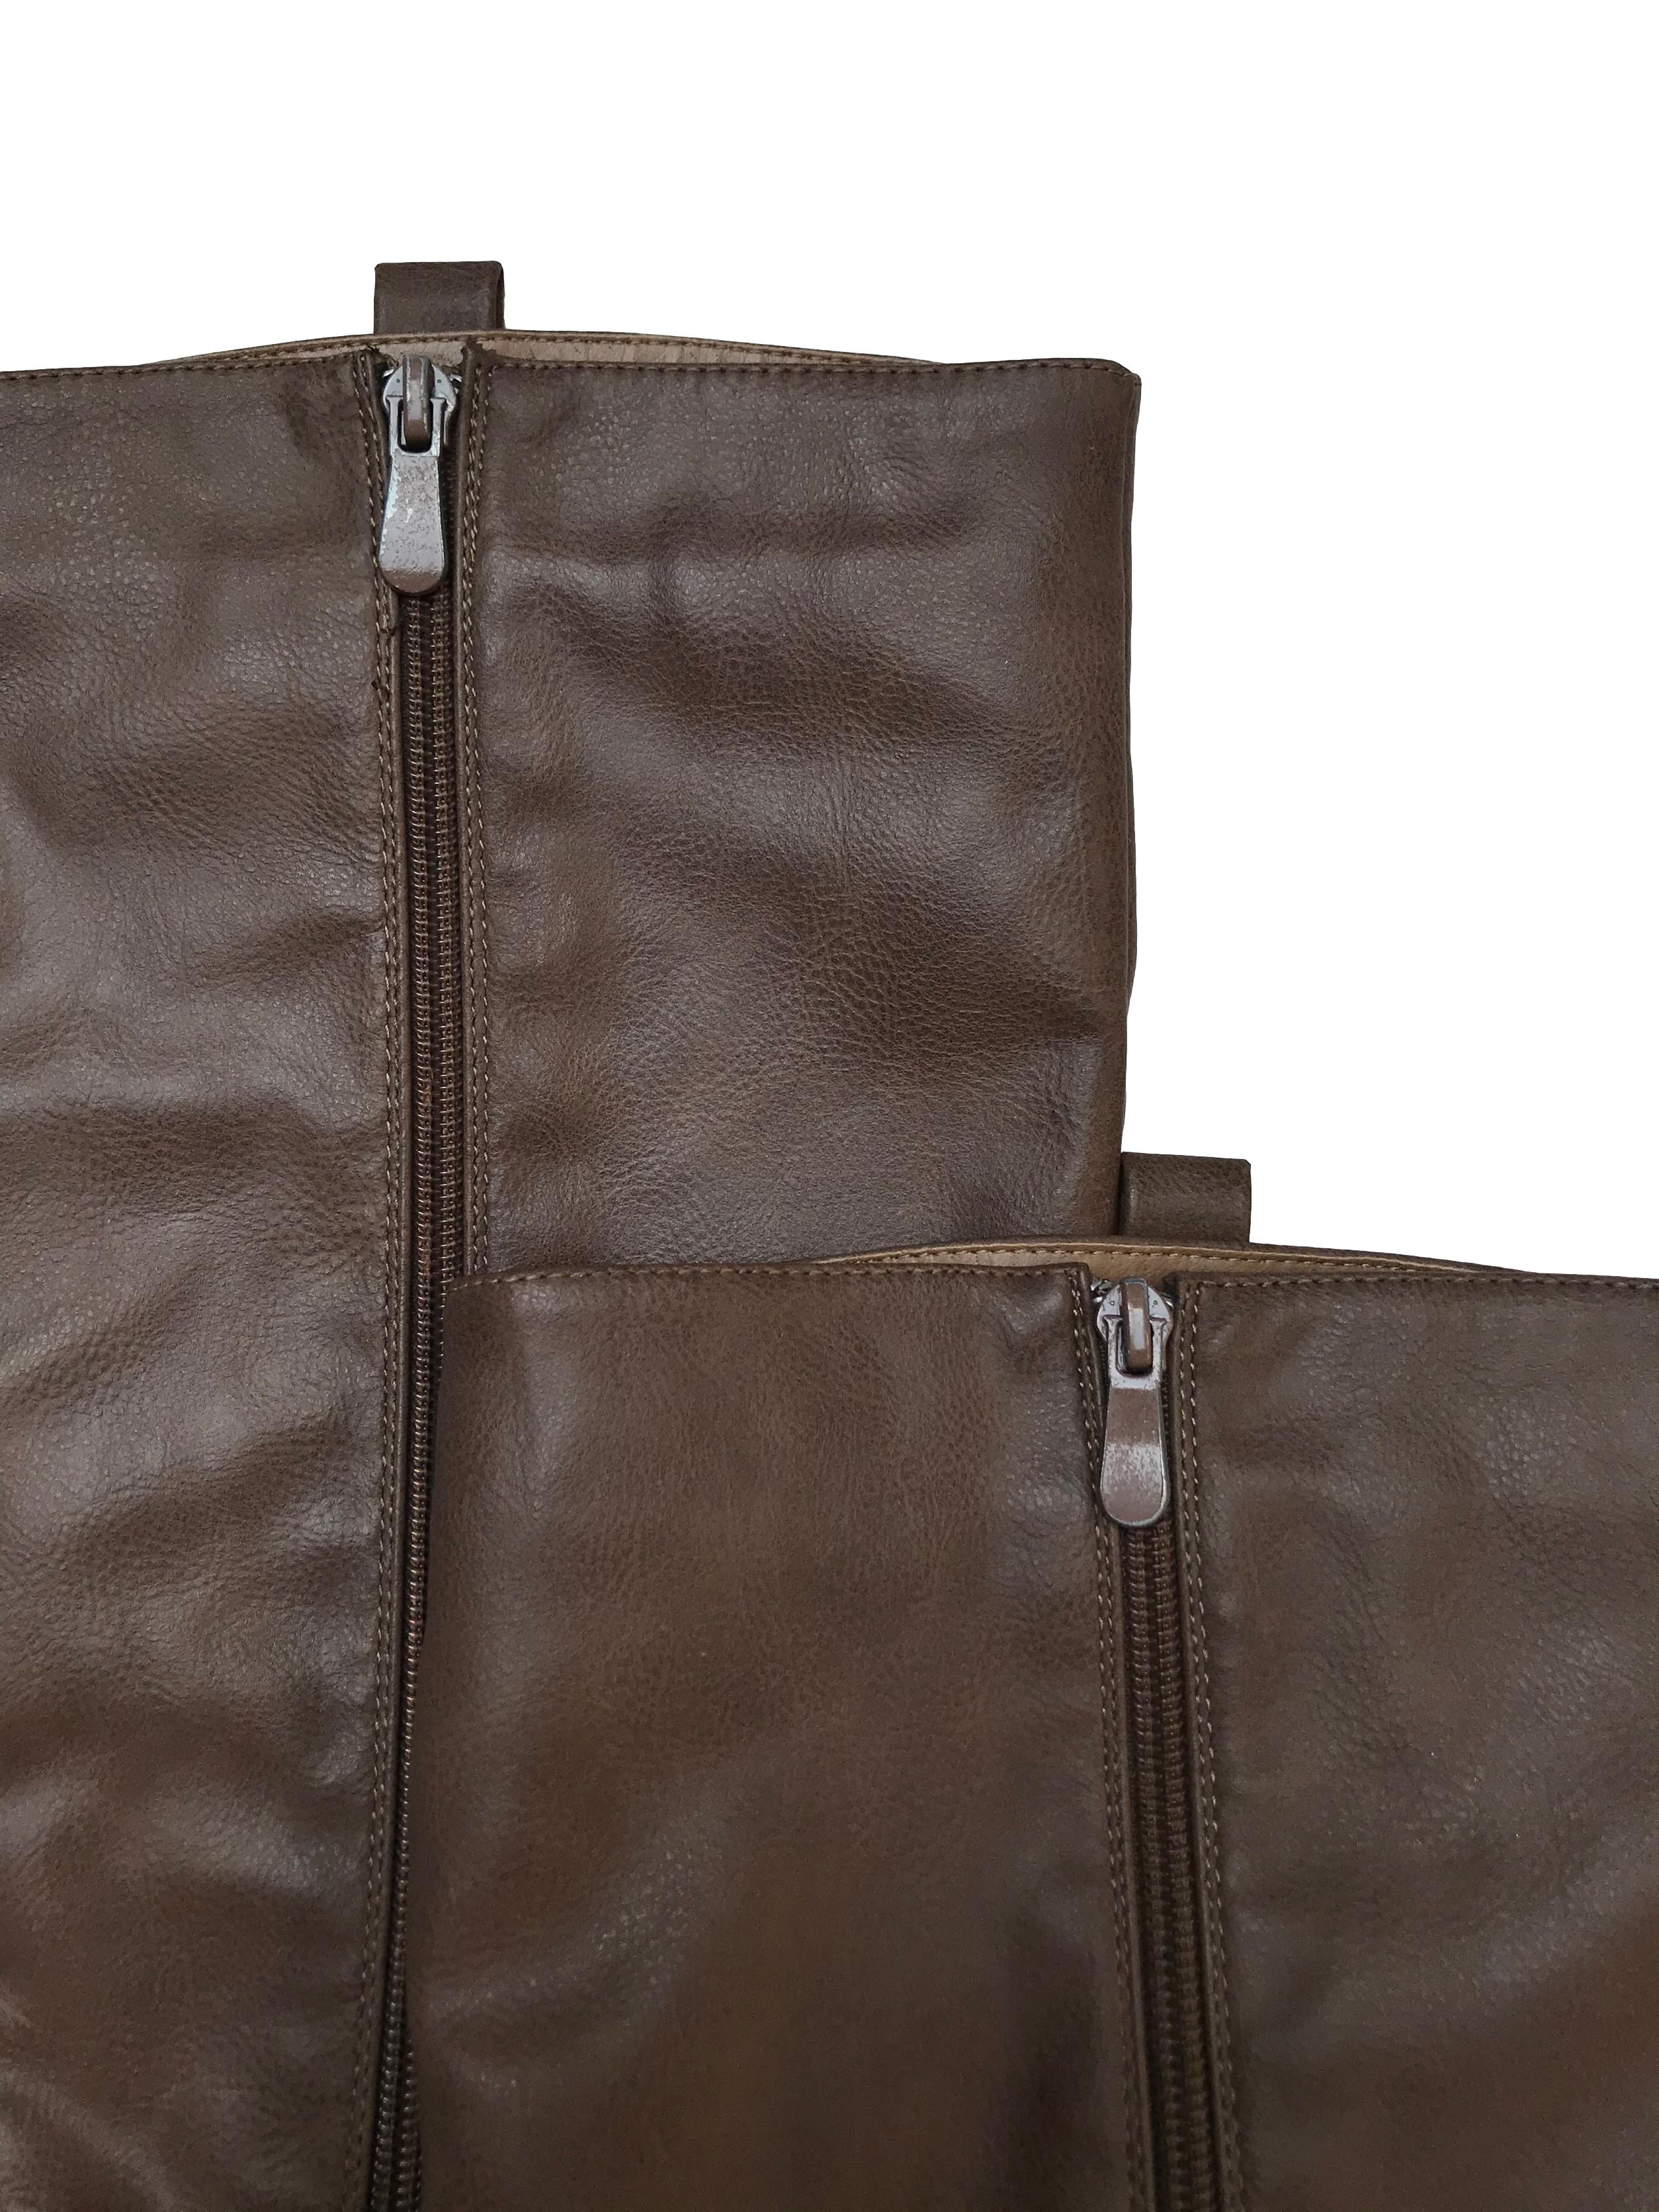 Botas Bata de cuerina marrón con cierre interno, taco 3cm. Alto caña 40cm. Estado 9/10. Precio original S/ 169